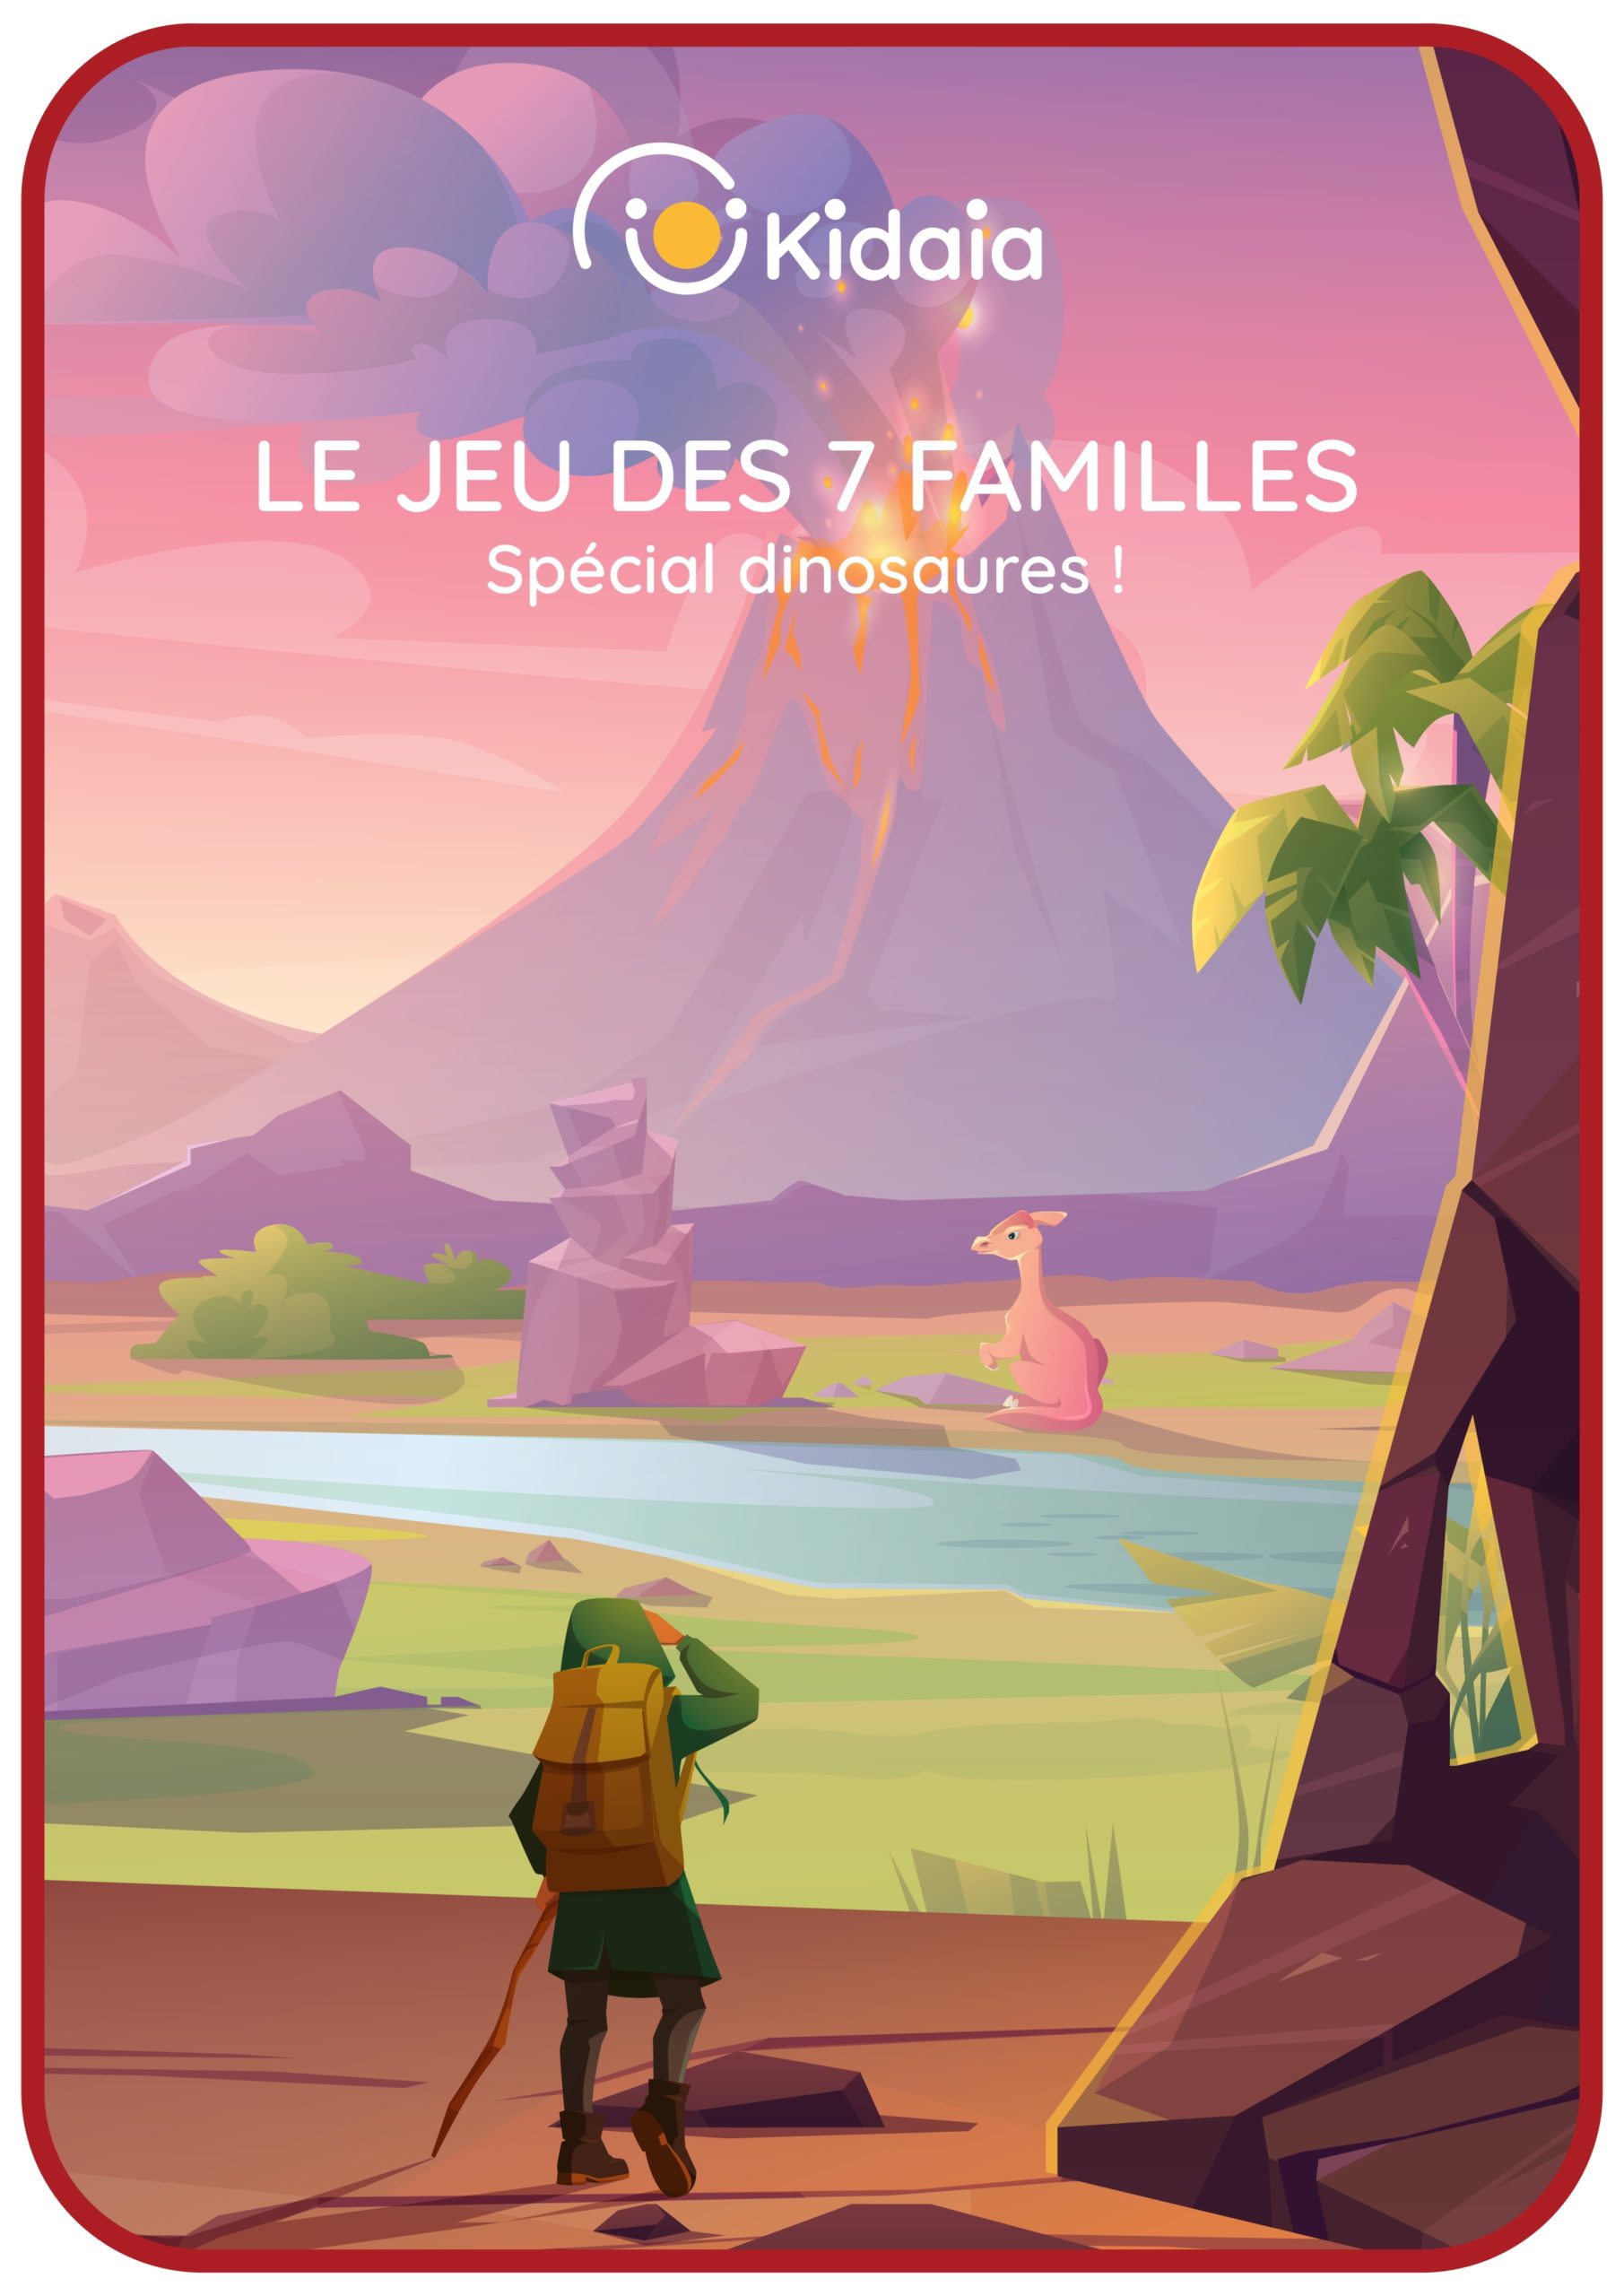 Le jeu des 7 familles spécial dinosaures - KIDAIA_page-0001